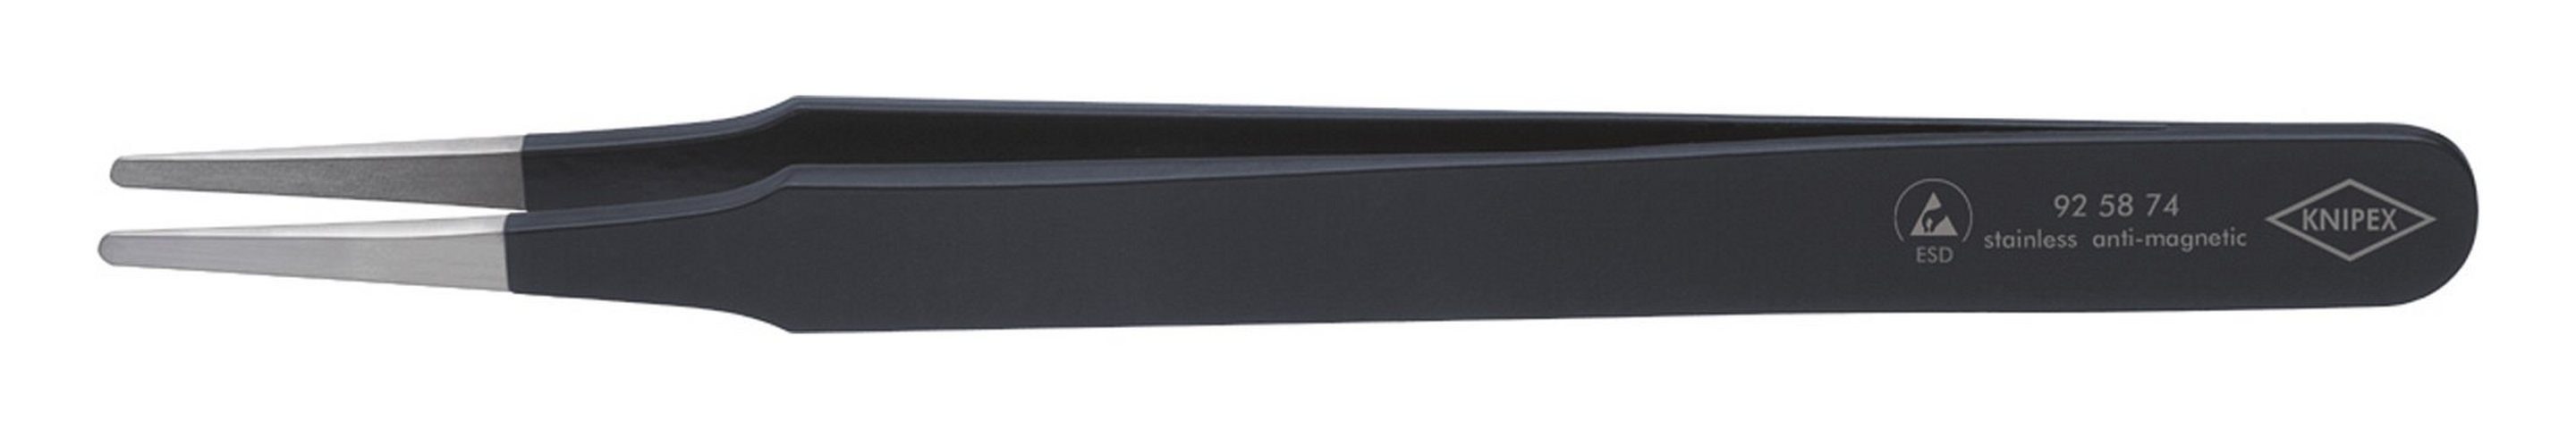 Knipex Pinzette, ESD rund 2 mm 120 mm schwarz